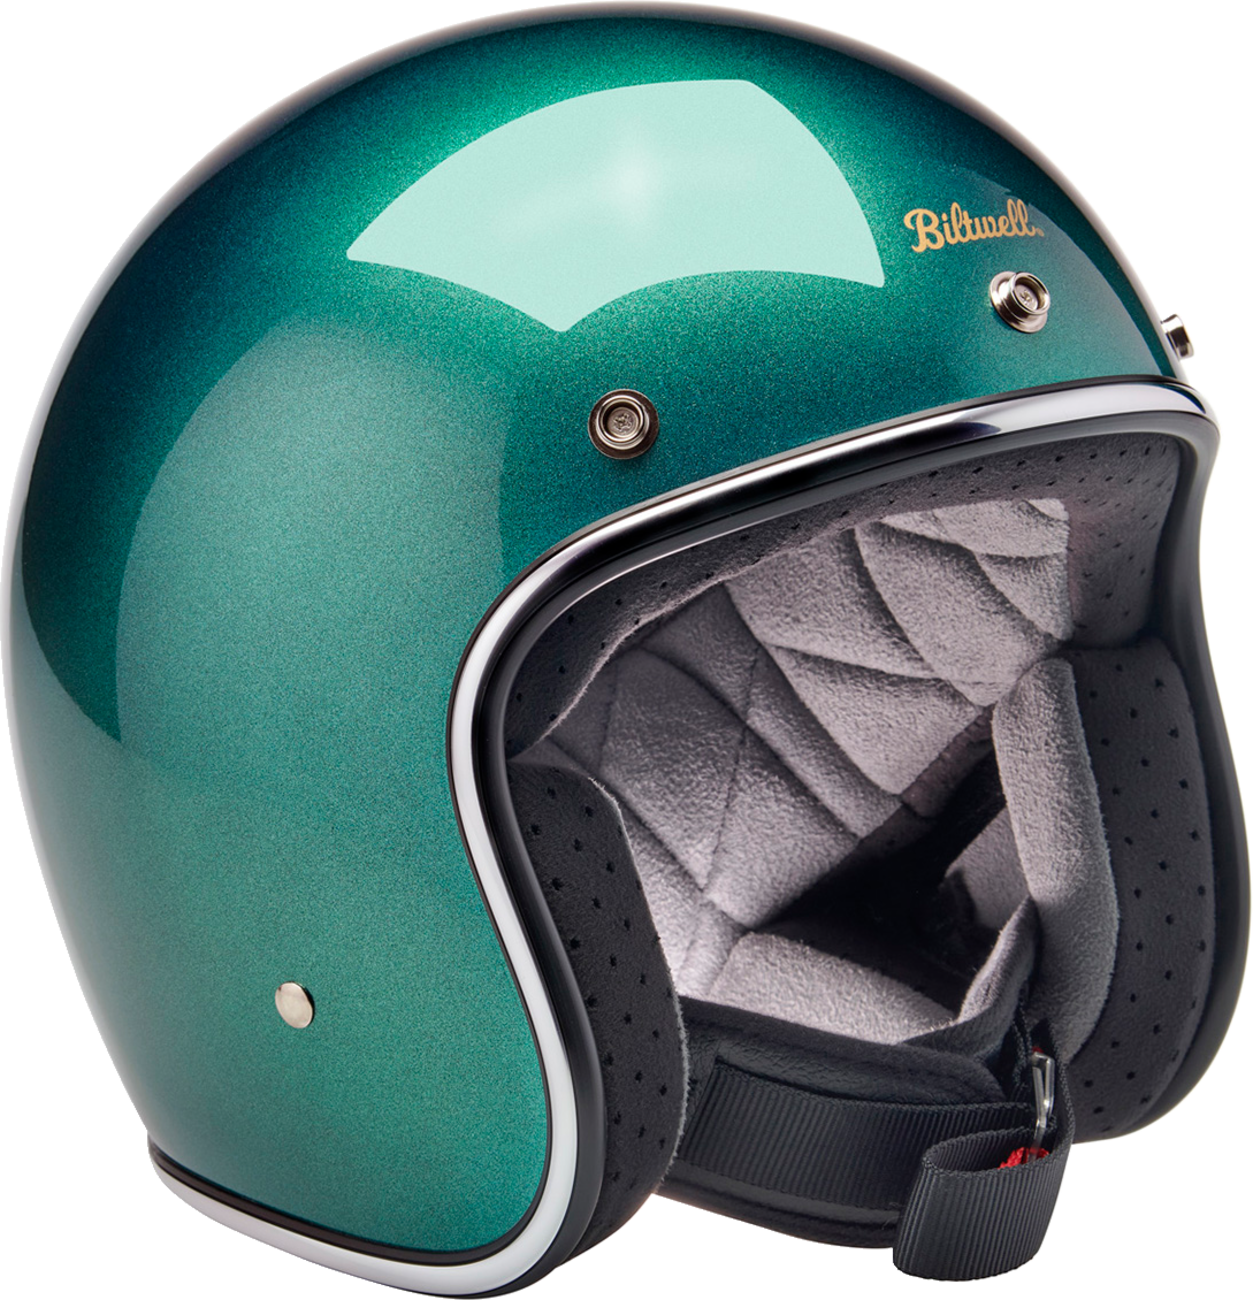 BILTWELL Bonanza Helmet - Metallic Catalina Green - Small 1001-358-202